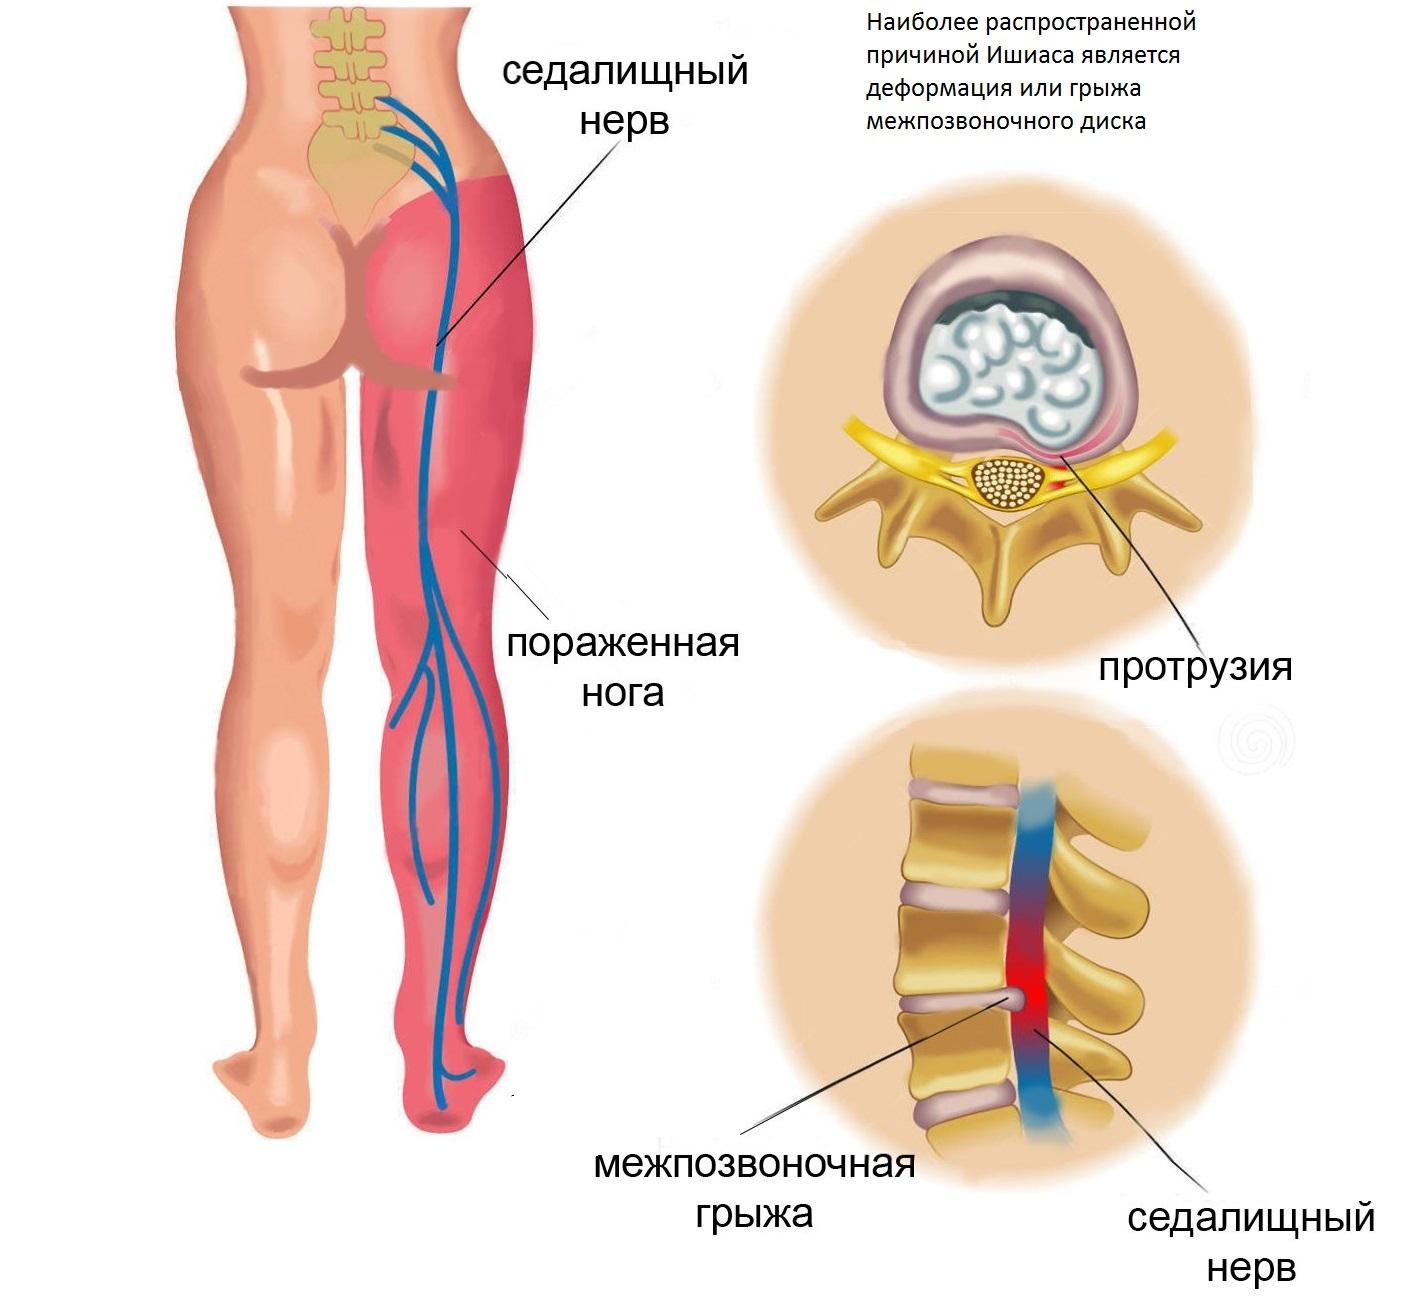 Анатомия седалищного нерва у человека